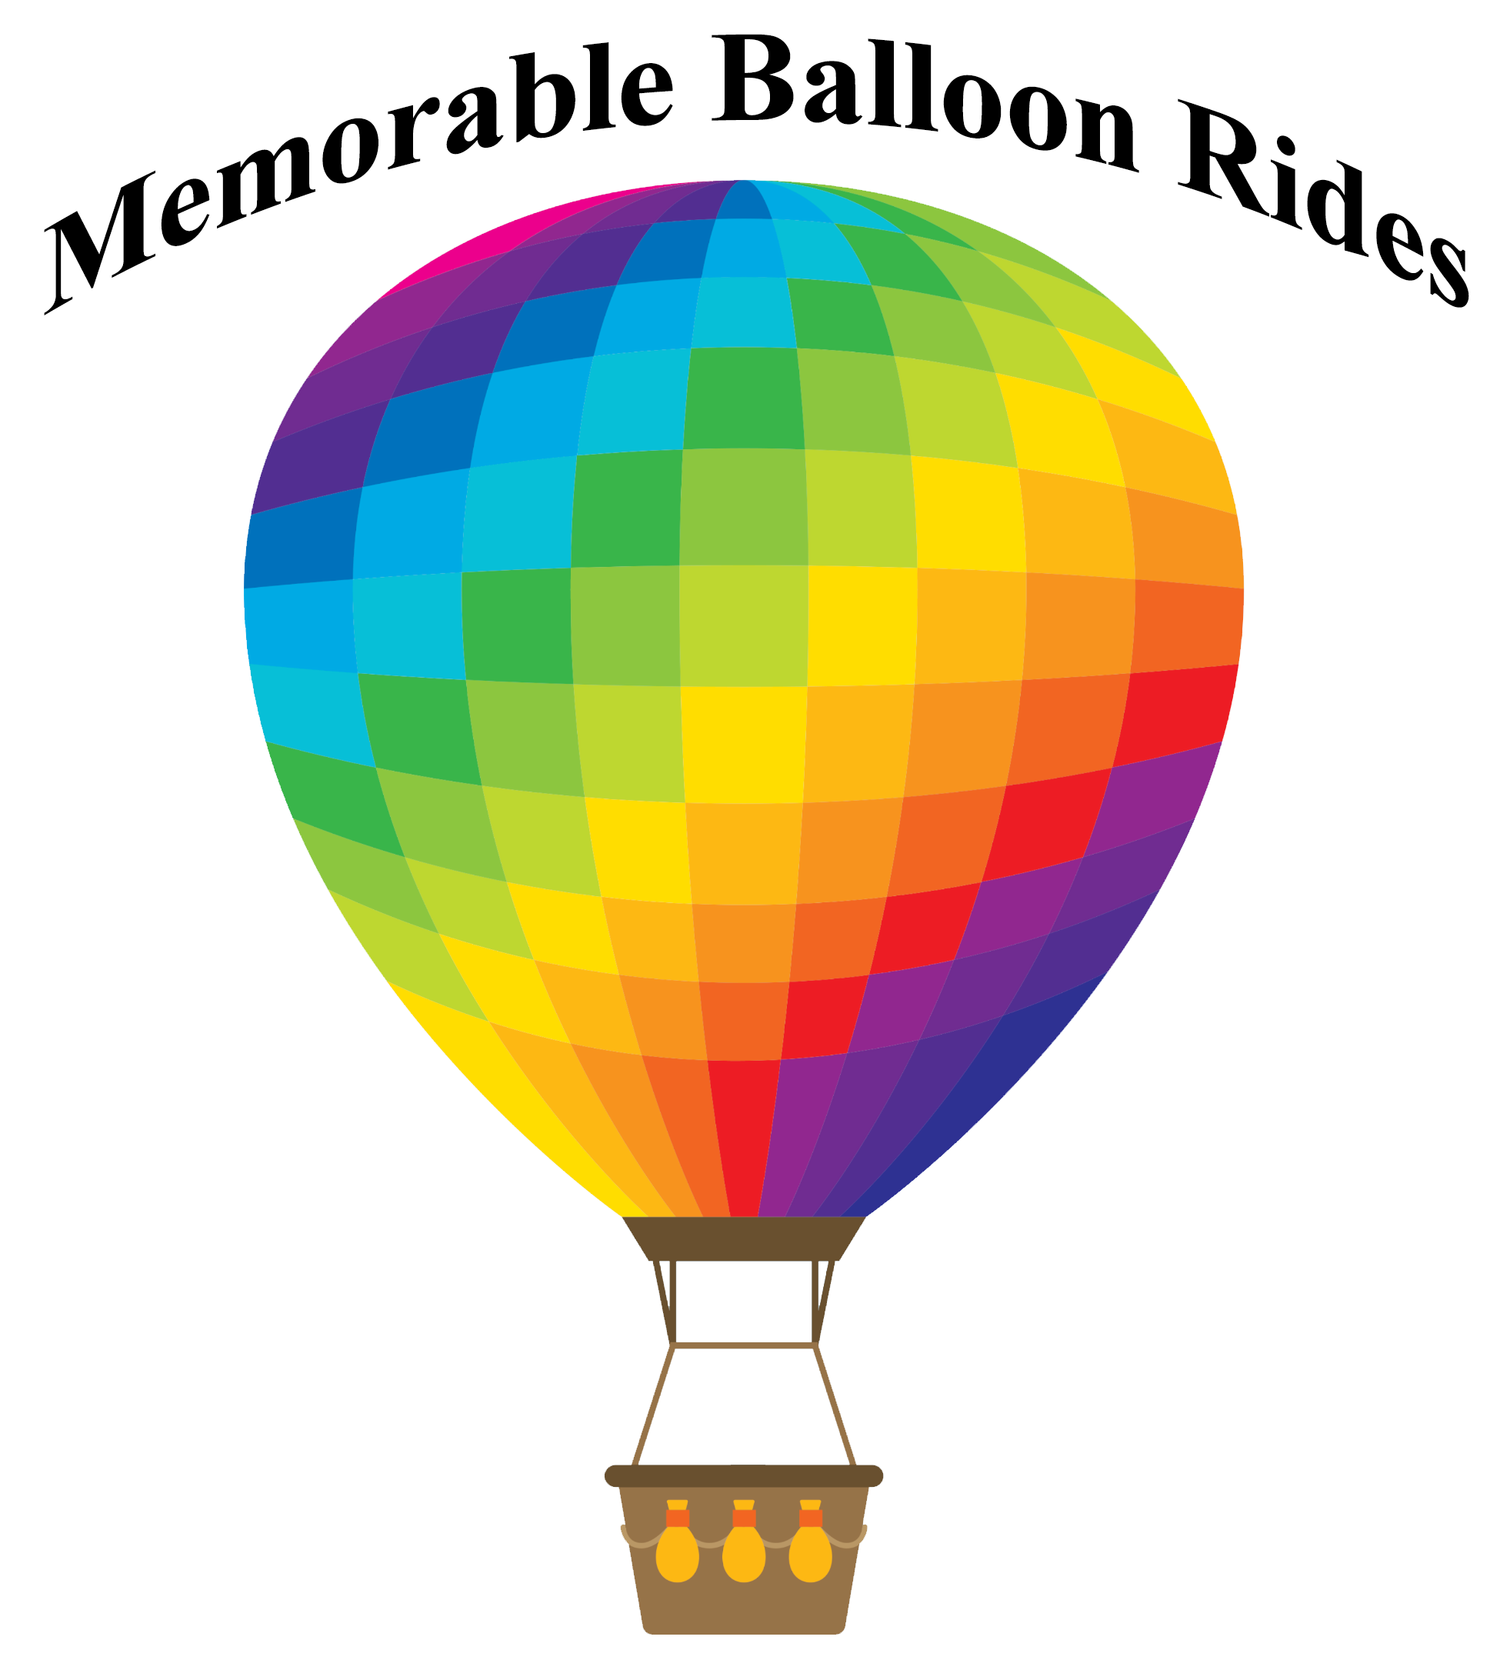 Memorable Balloon Rides